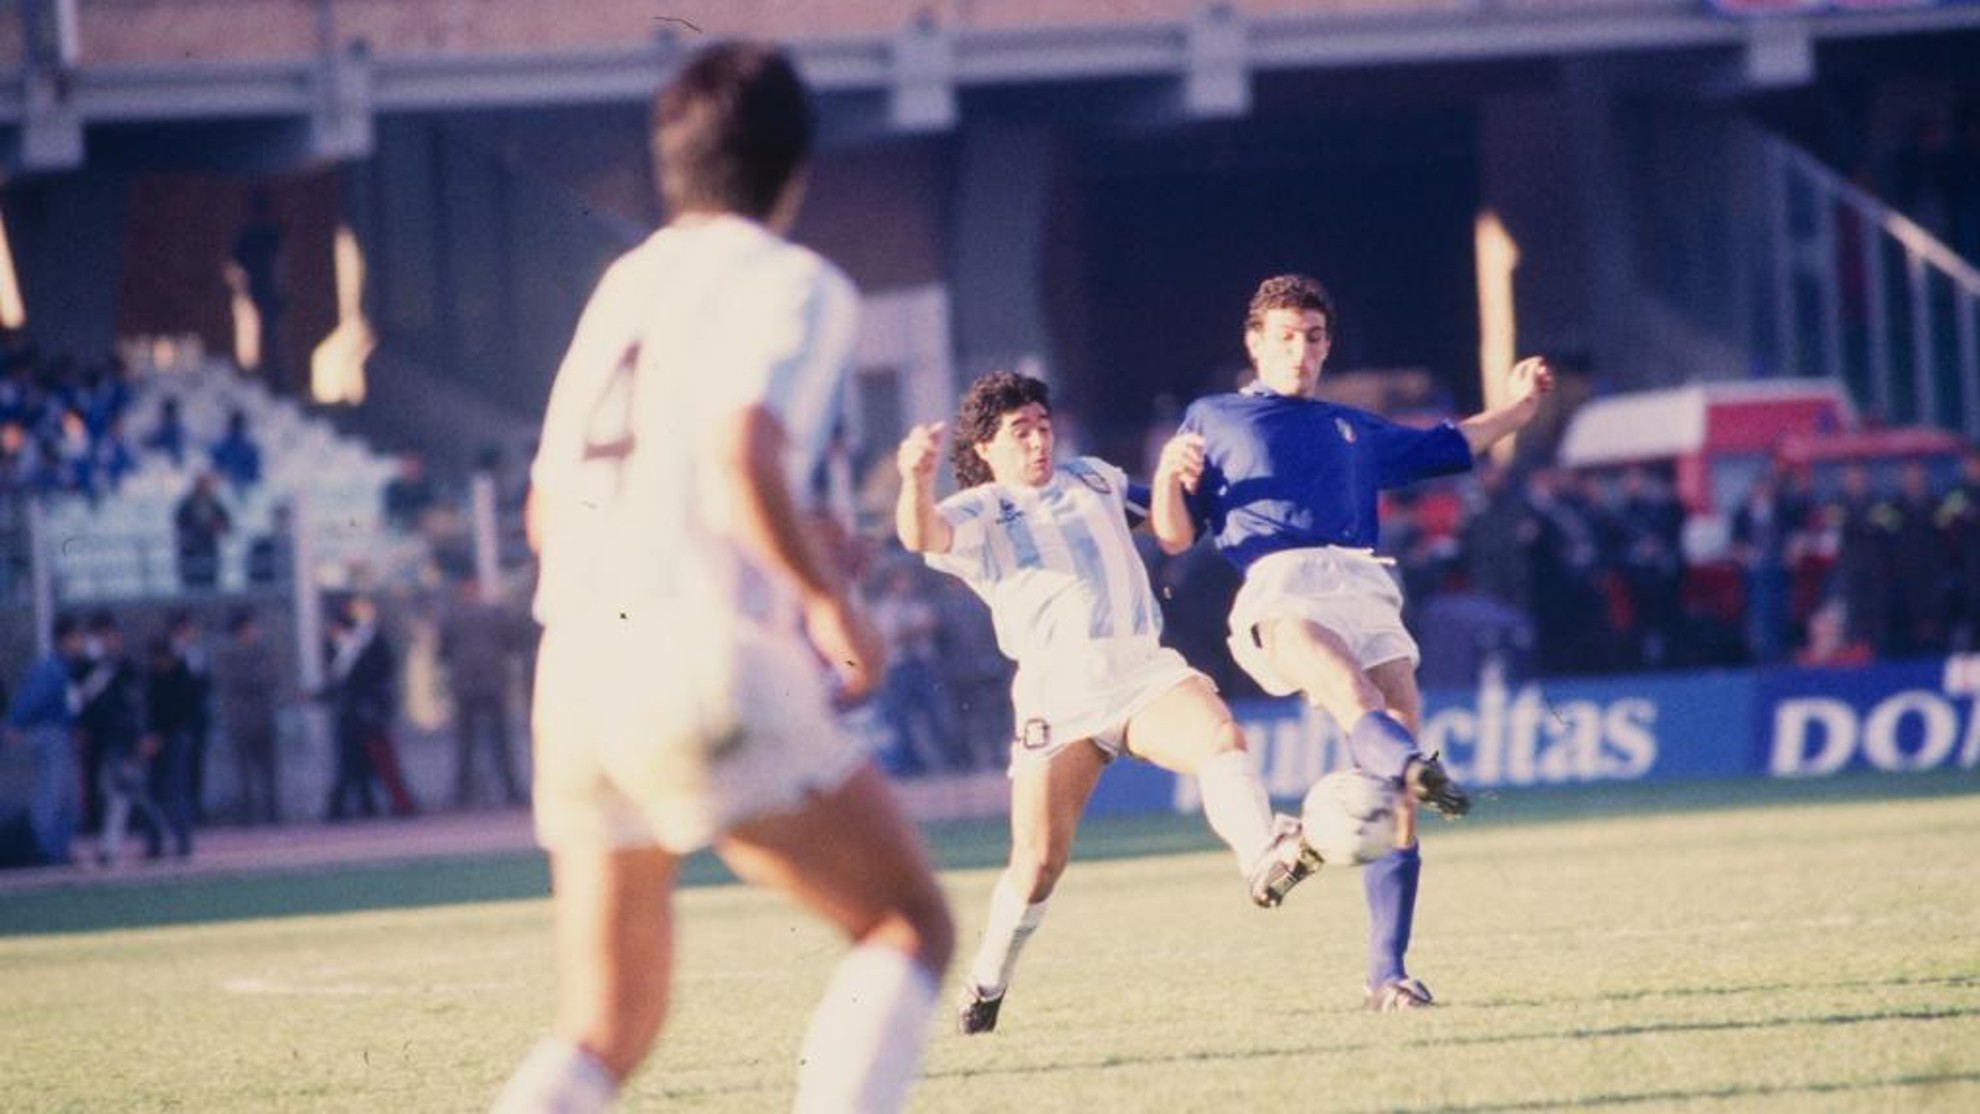 Maradona disputa el balón con un jugador italiano durante un Argentina-Italia.